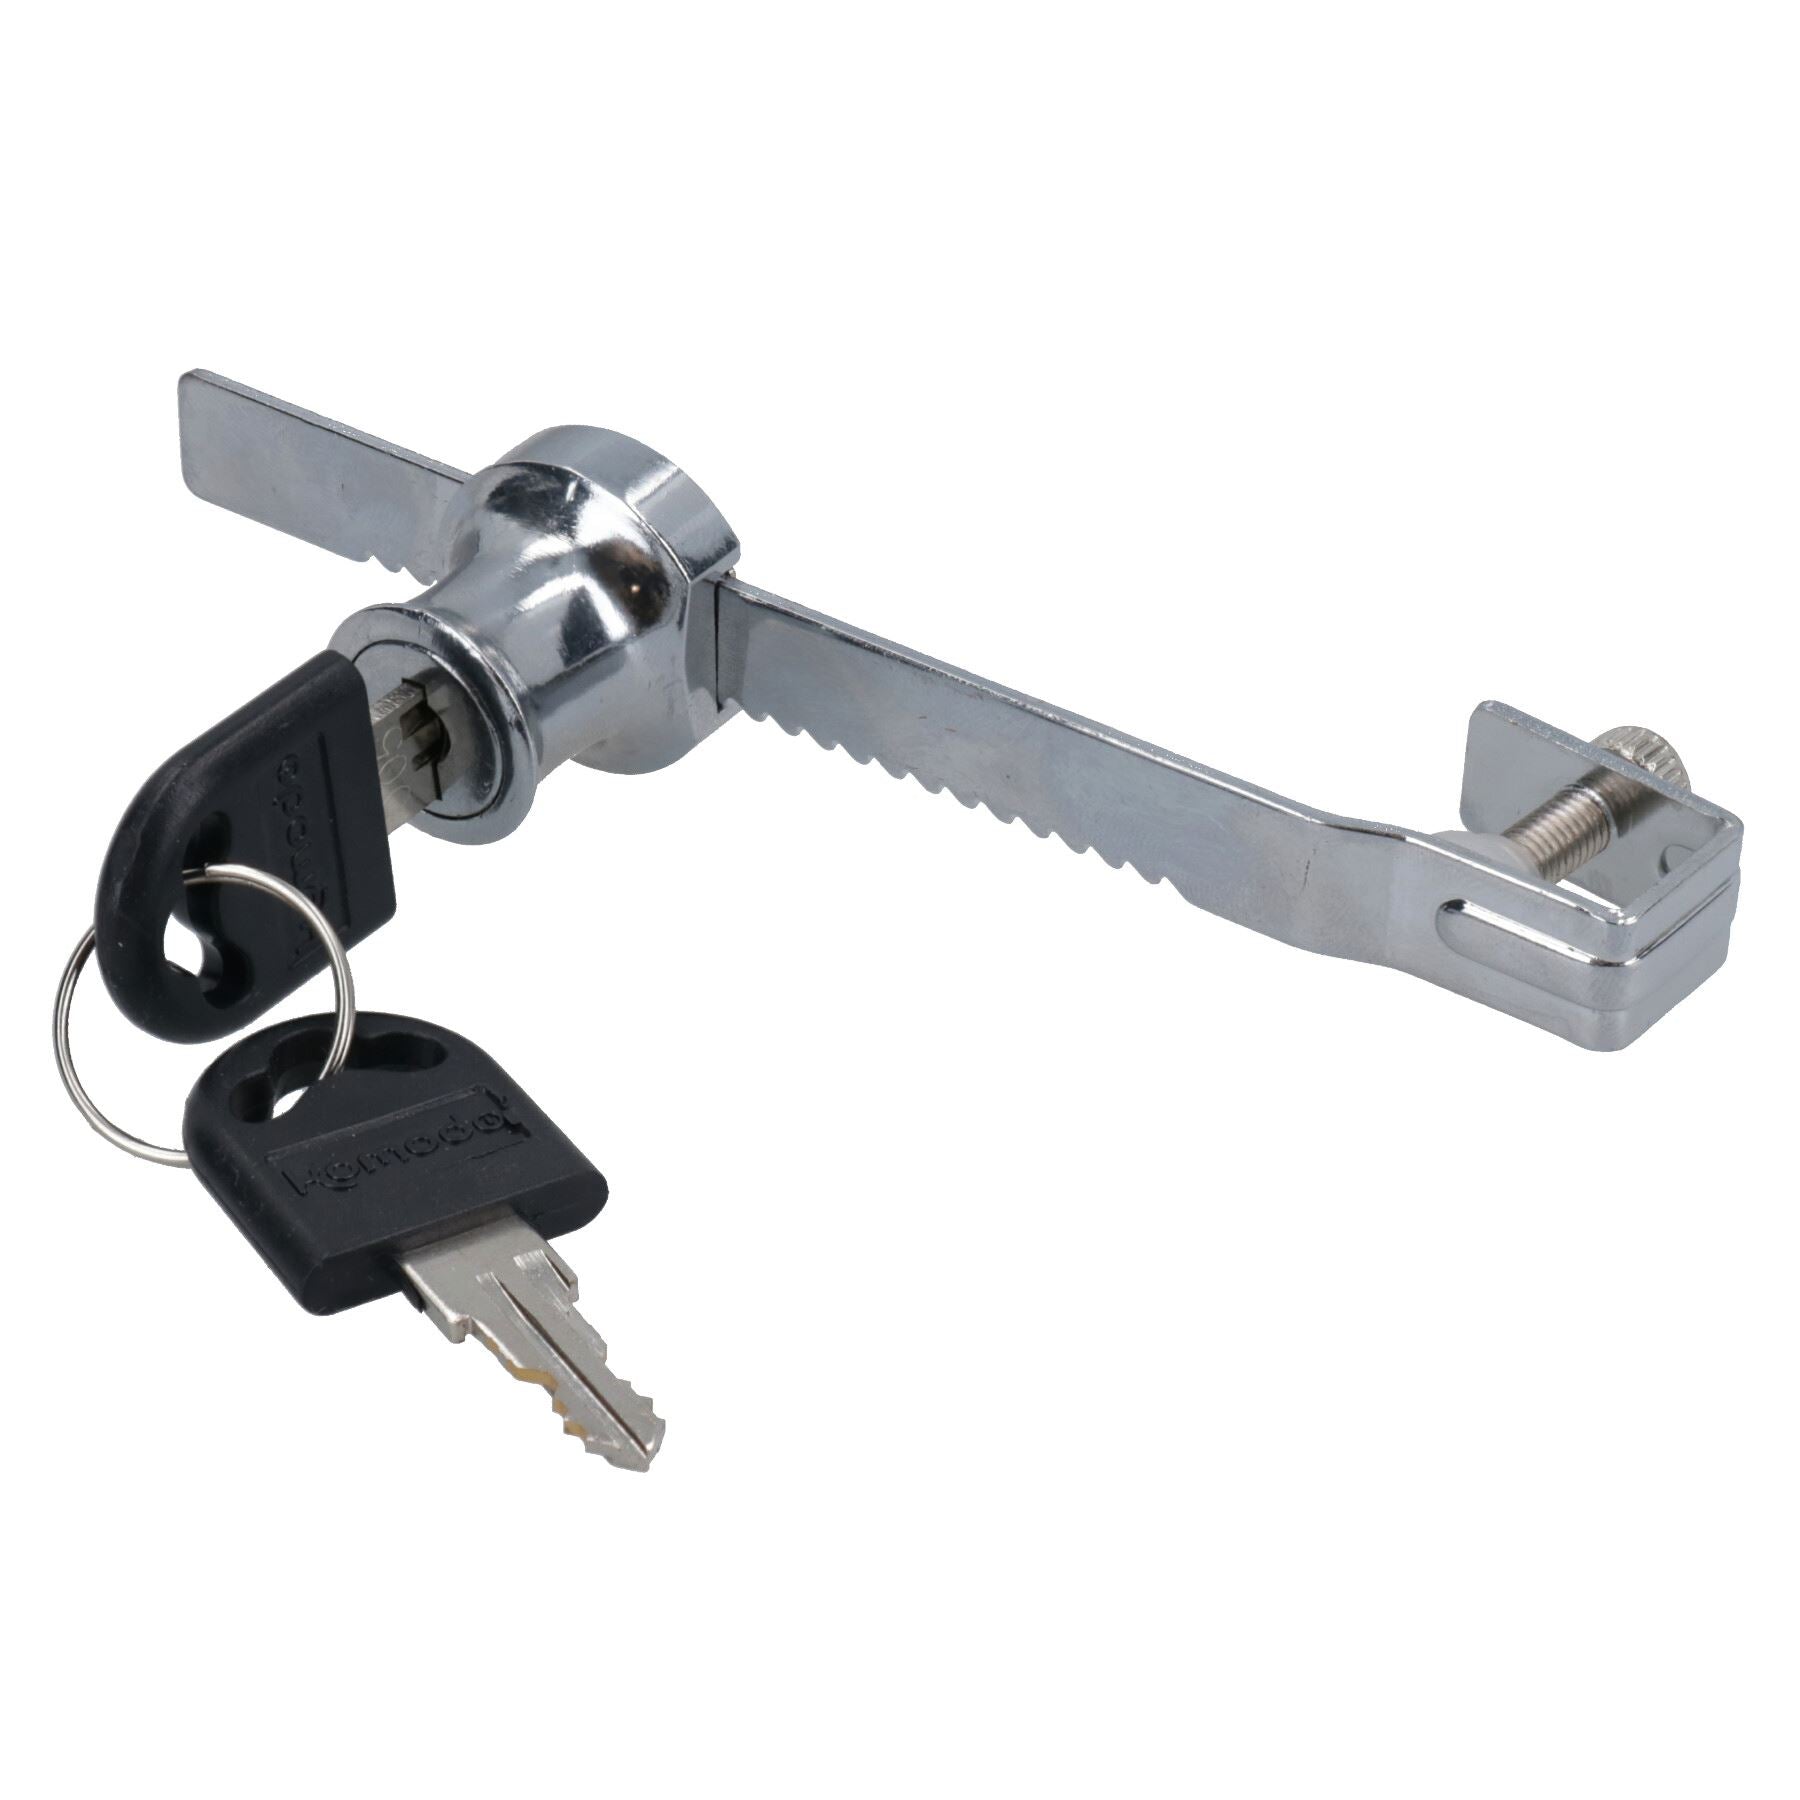 Terrarium Sliding Lock With Key for Security for Glass Vivarium / Terrarium Doors